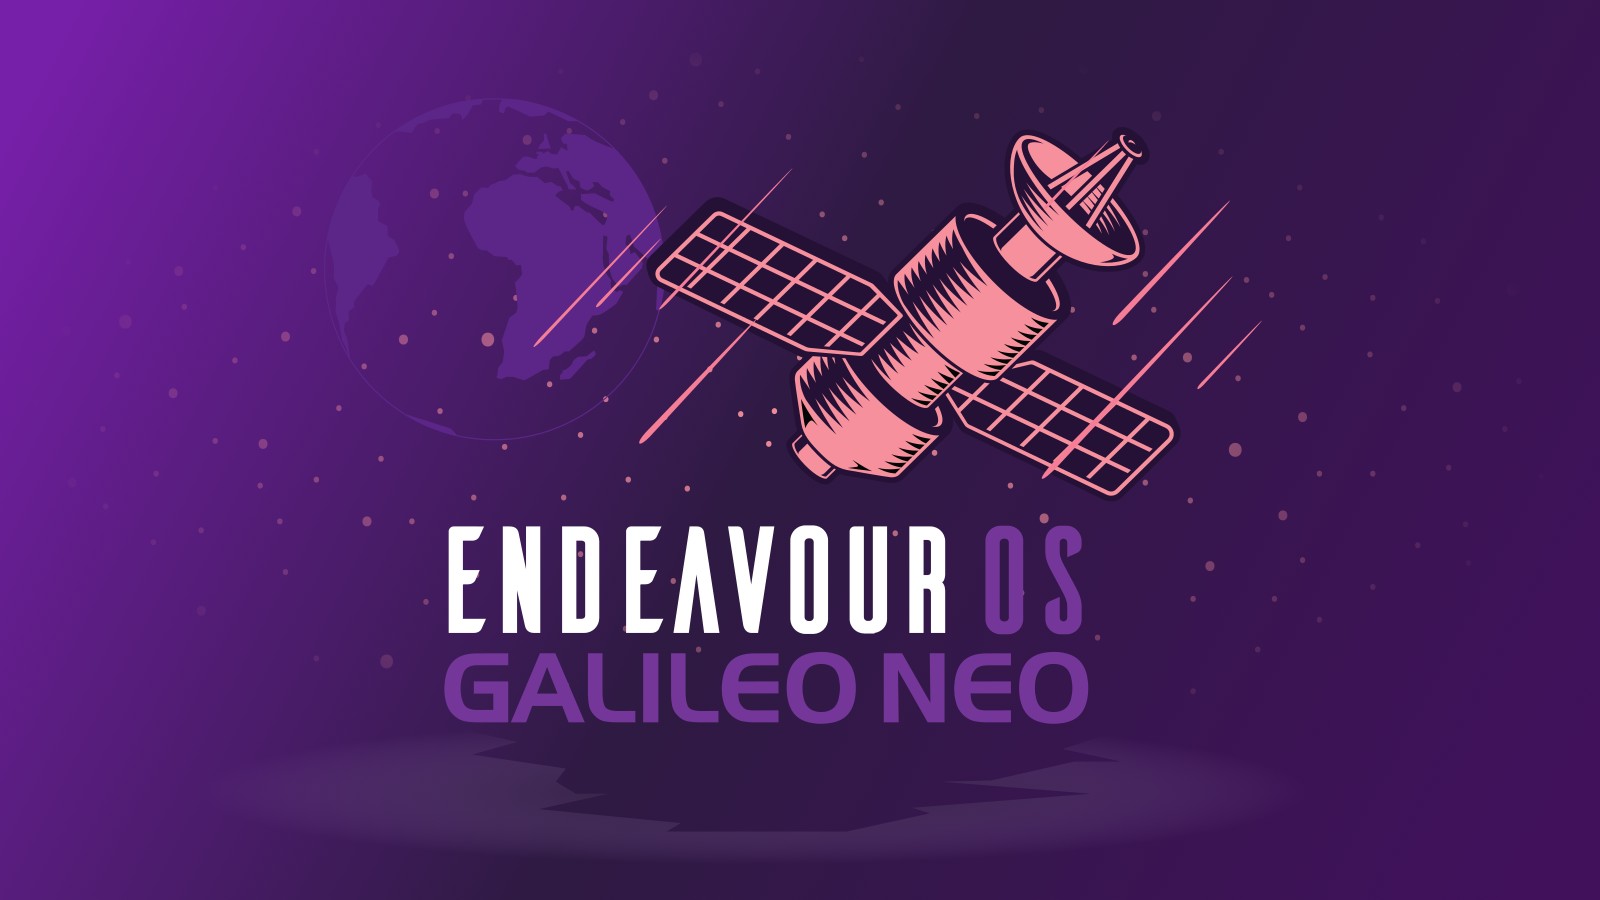 Rilasciata EndeavourOS Galileo Neo